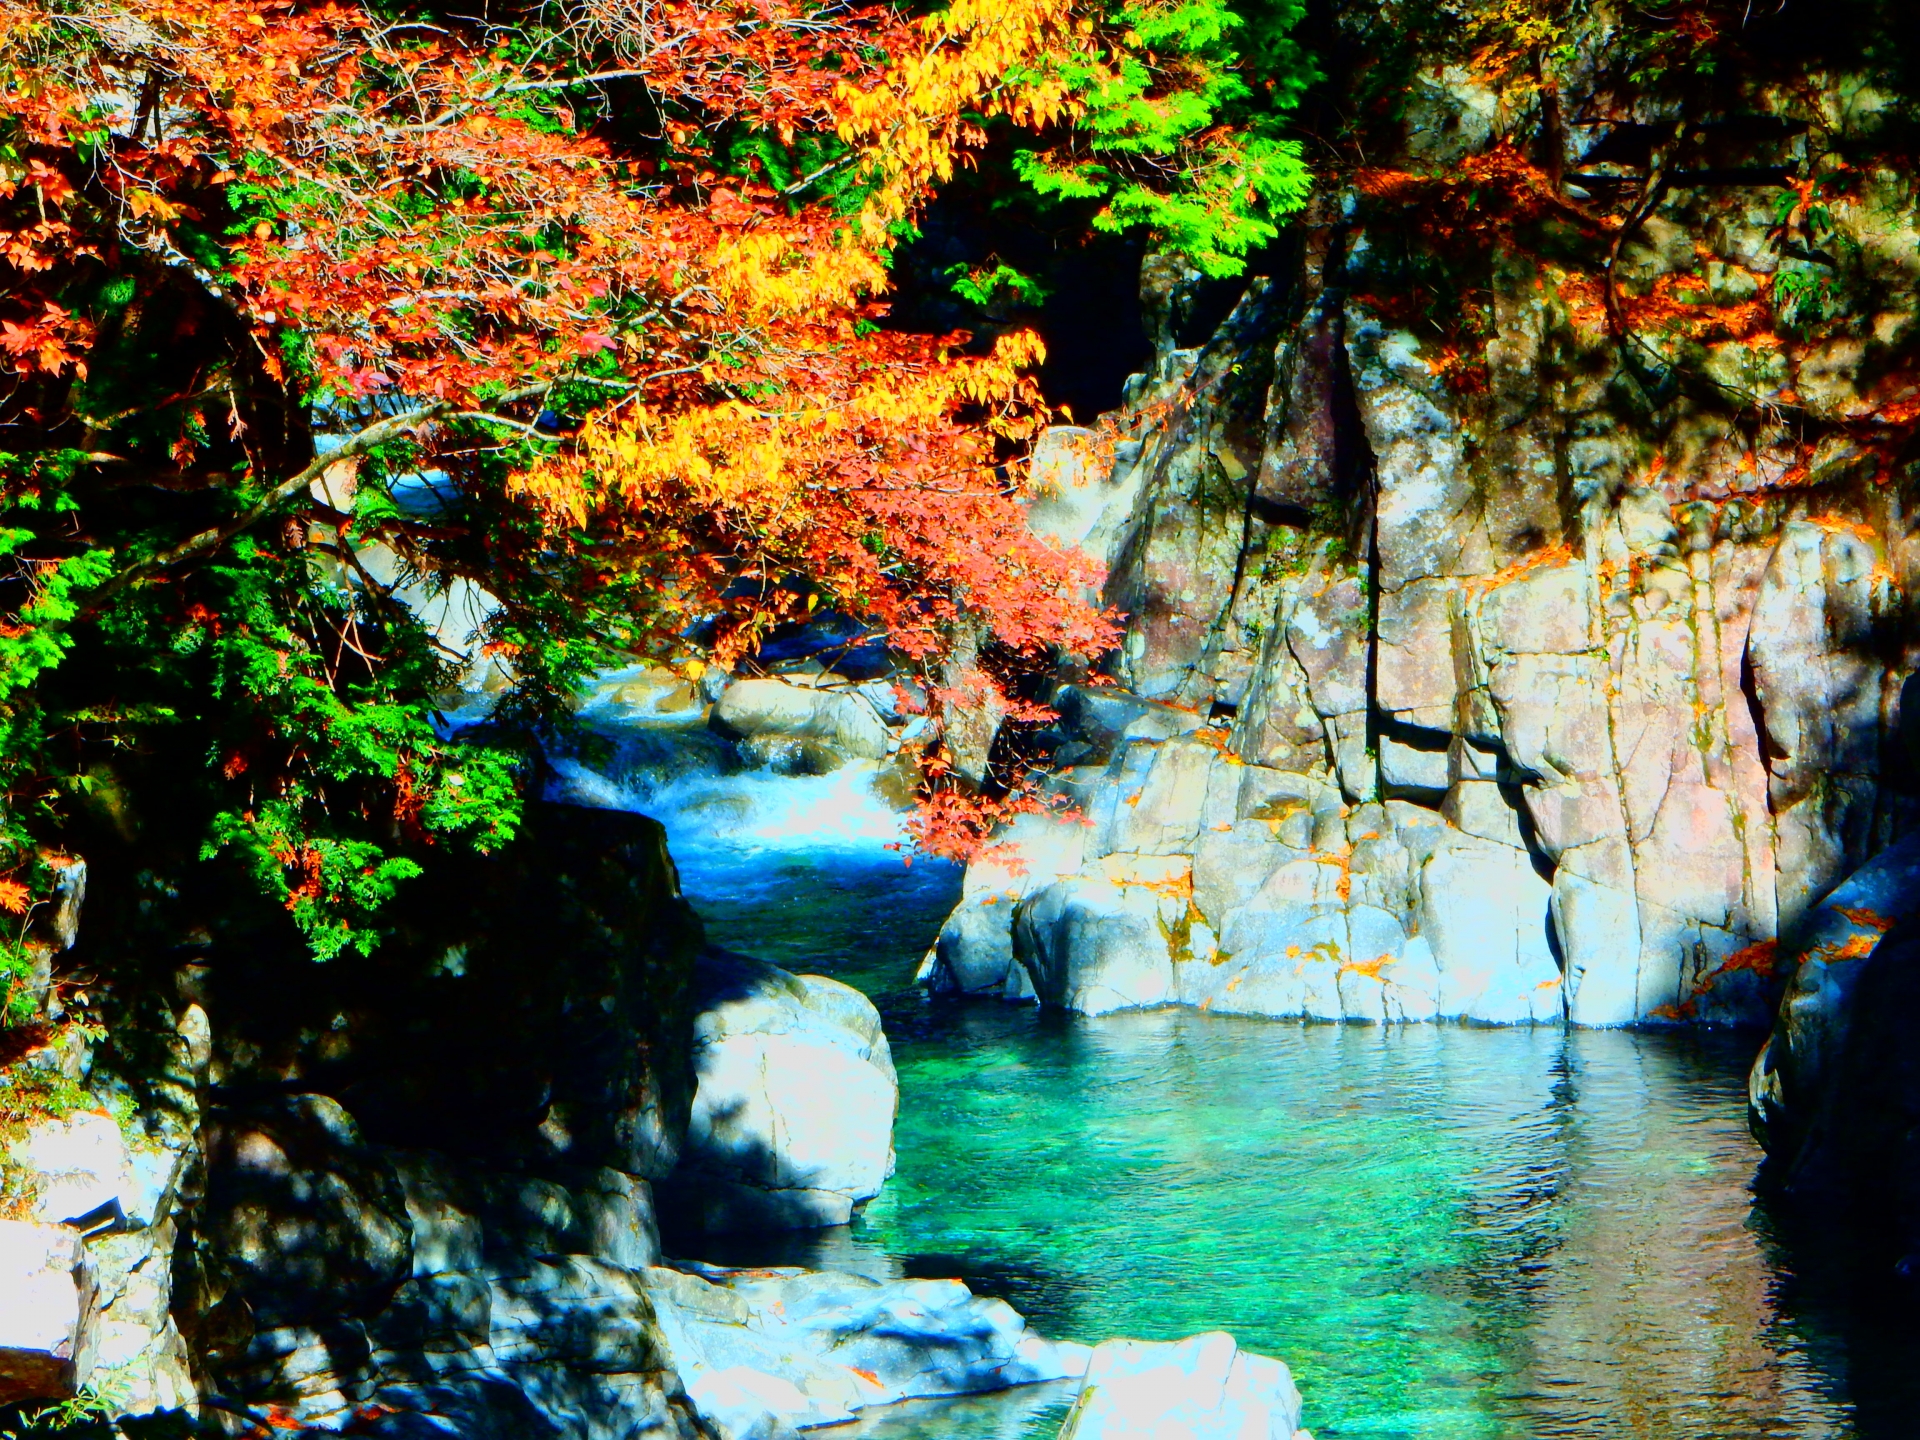 阿寺渓谷の紅葉 エメラルドグリーンの清流と紅葉が最高 情報発信ブログサイト Blue Rose